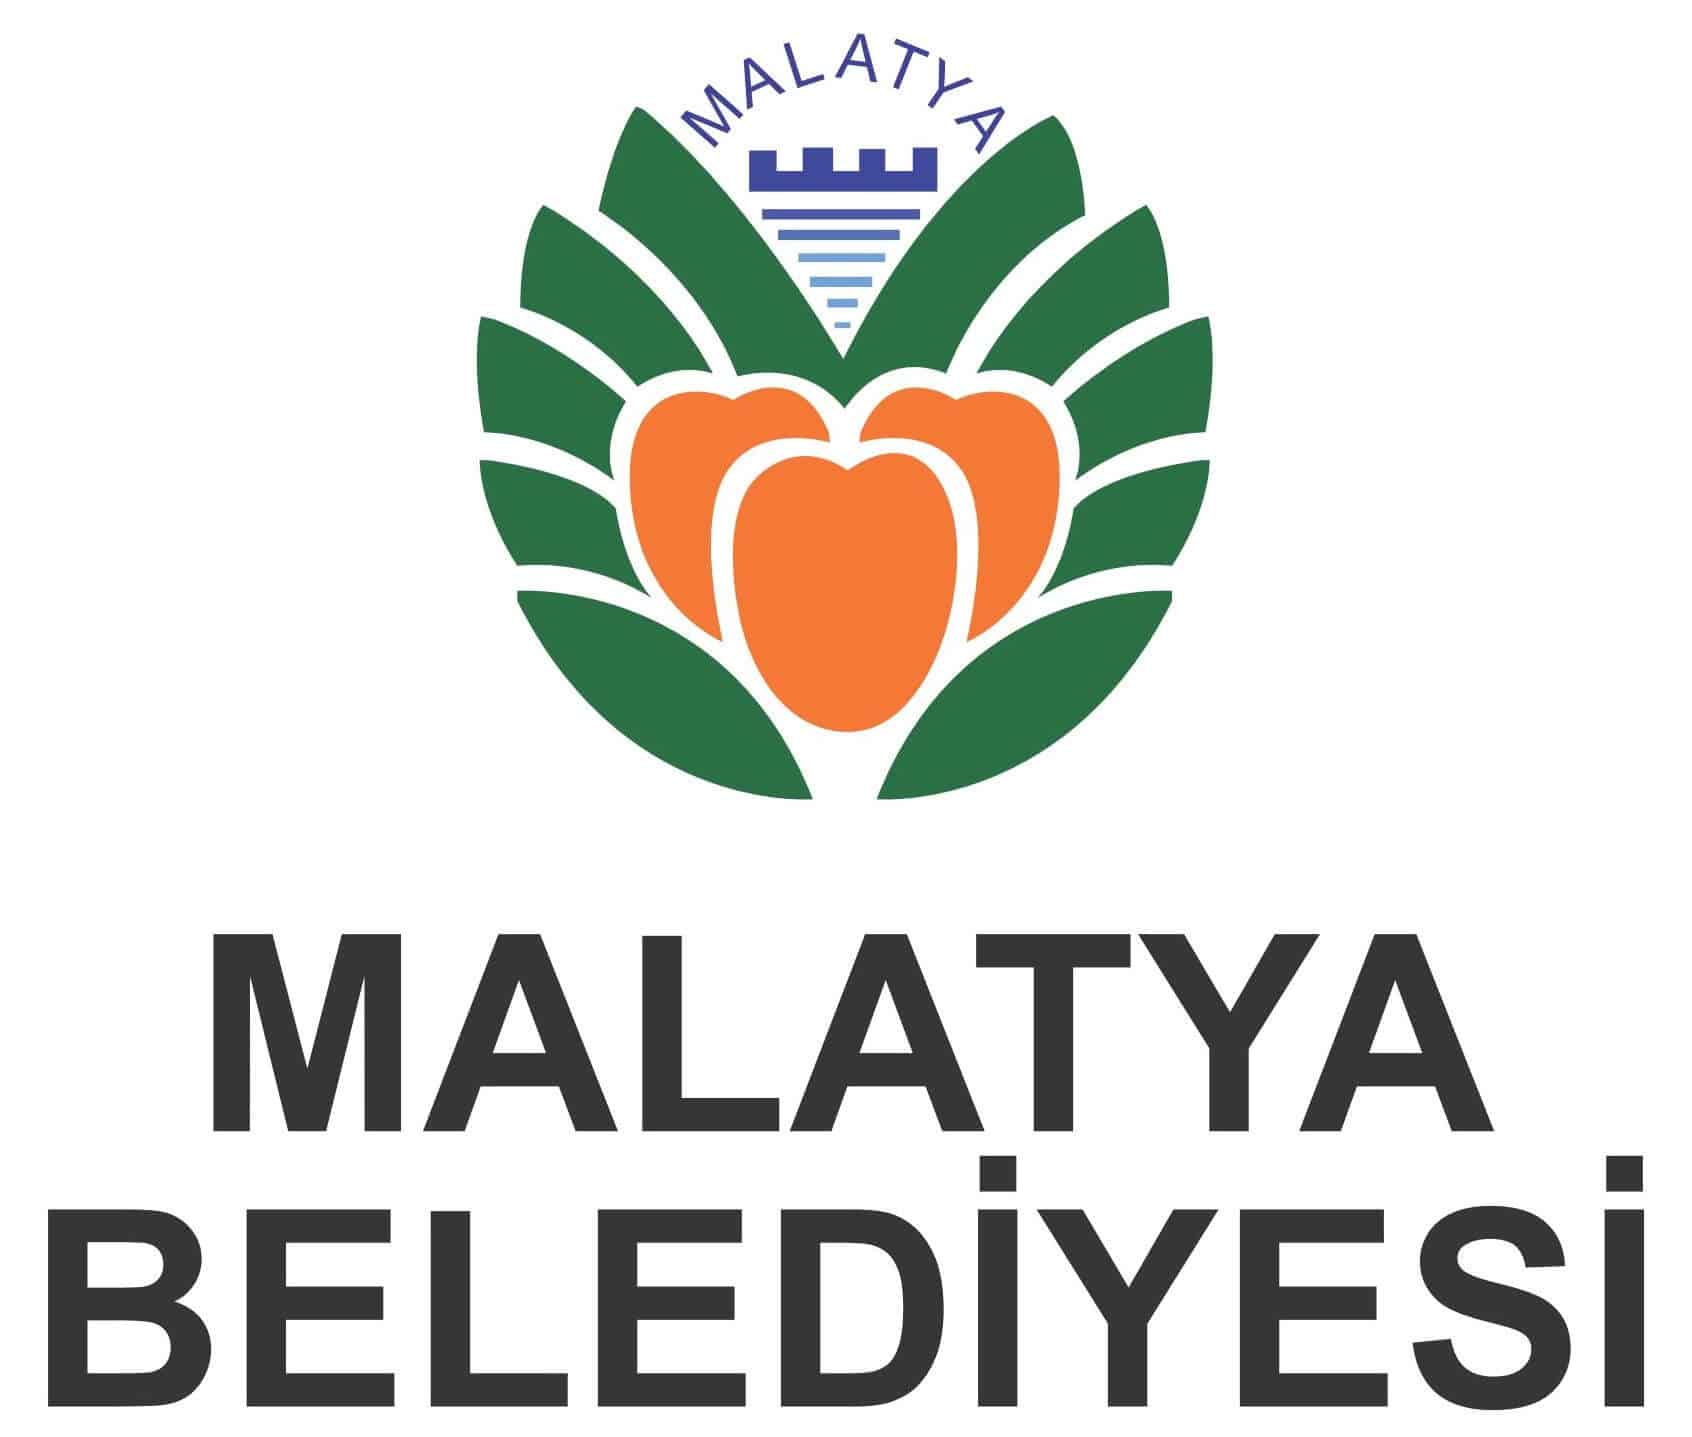 malatya belediyesi logo